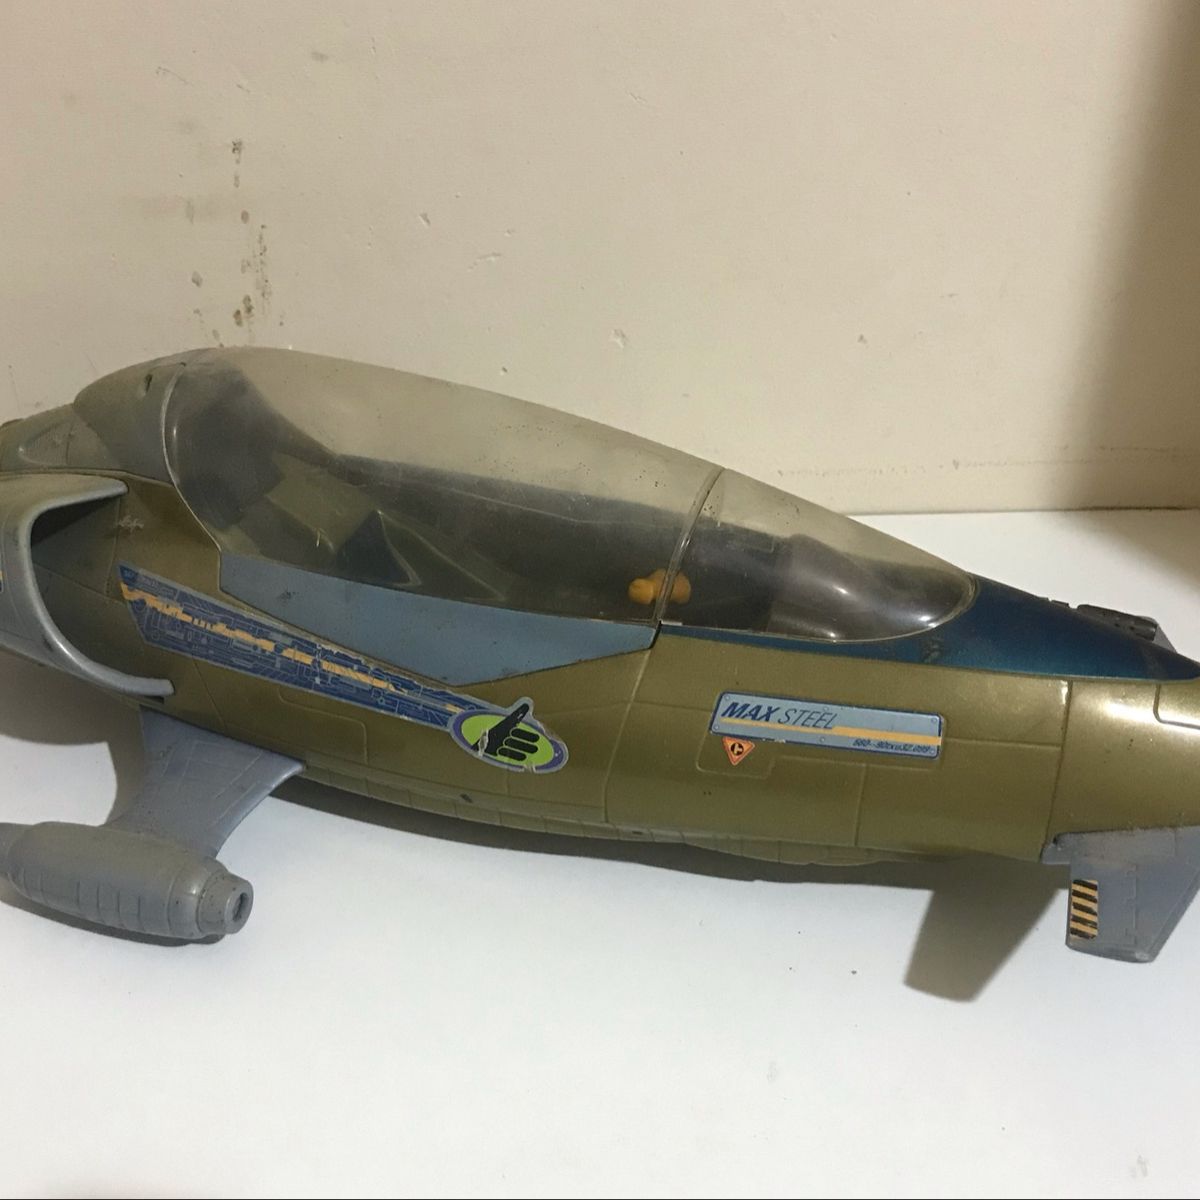 Avião de Brinquedo Articulado Infantil Comando Fighter – 1 Unidade